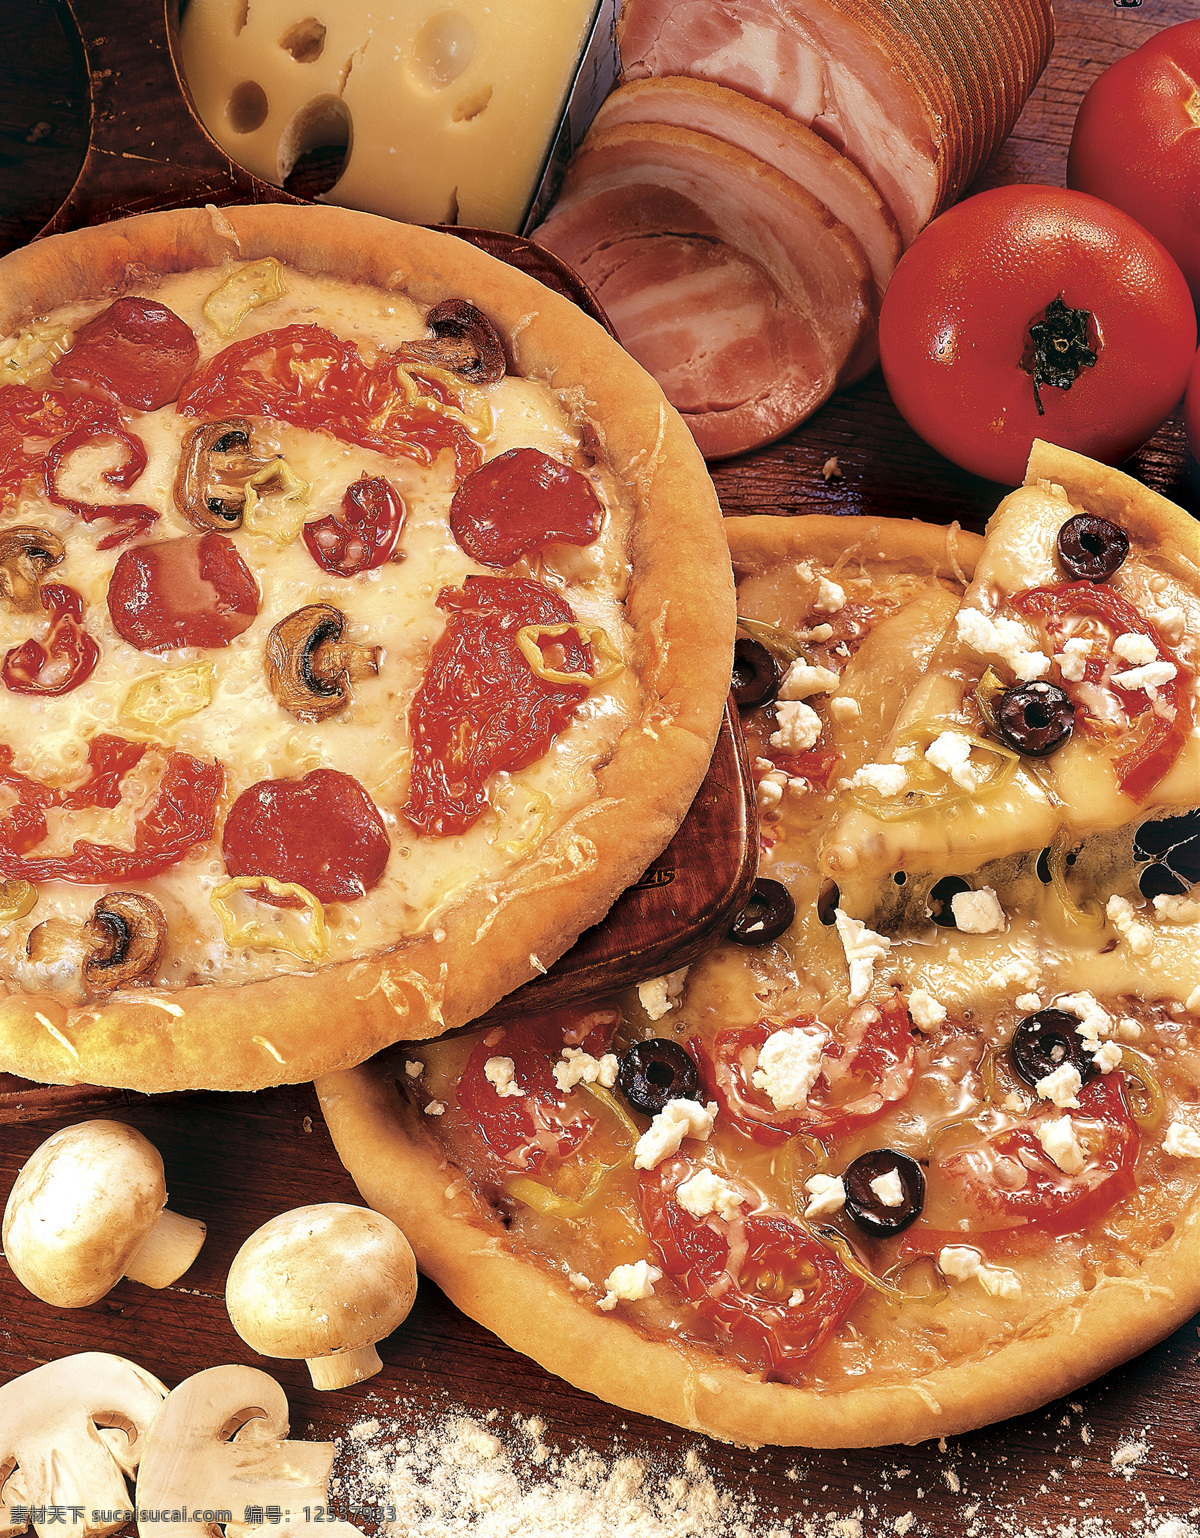 意大利 披萨 香菇 番茄 披萨美食 意大利披萨 披萨摄影 美味 外国美食 餐饮美食 黑色